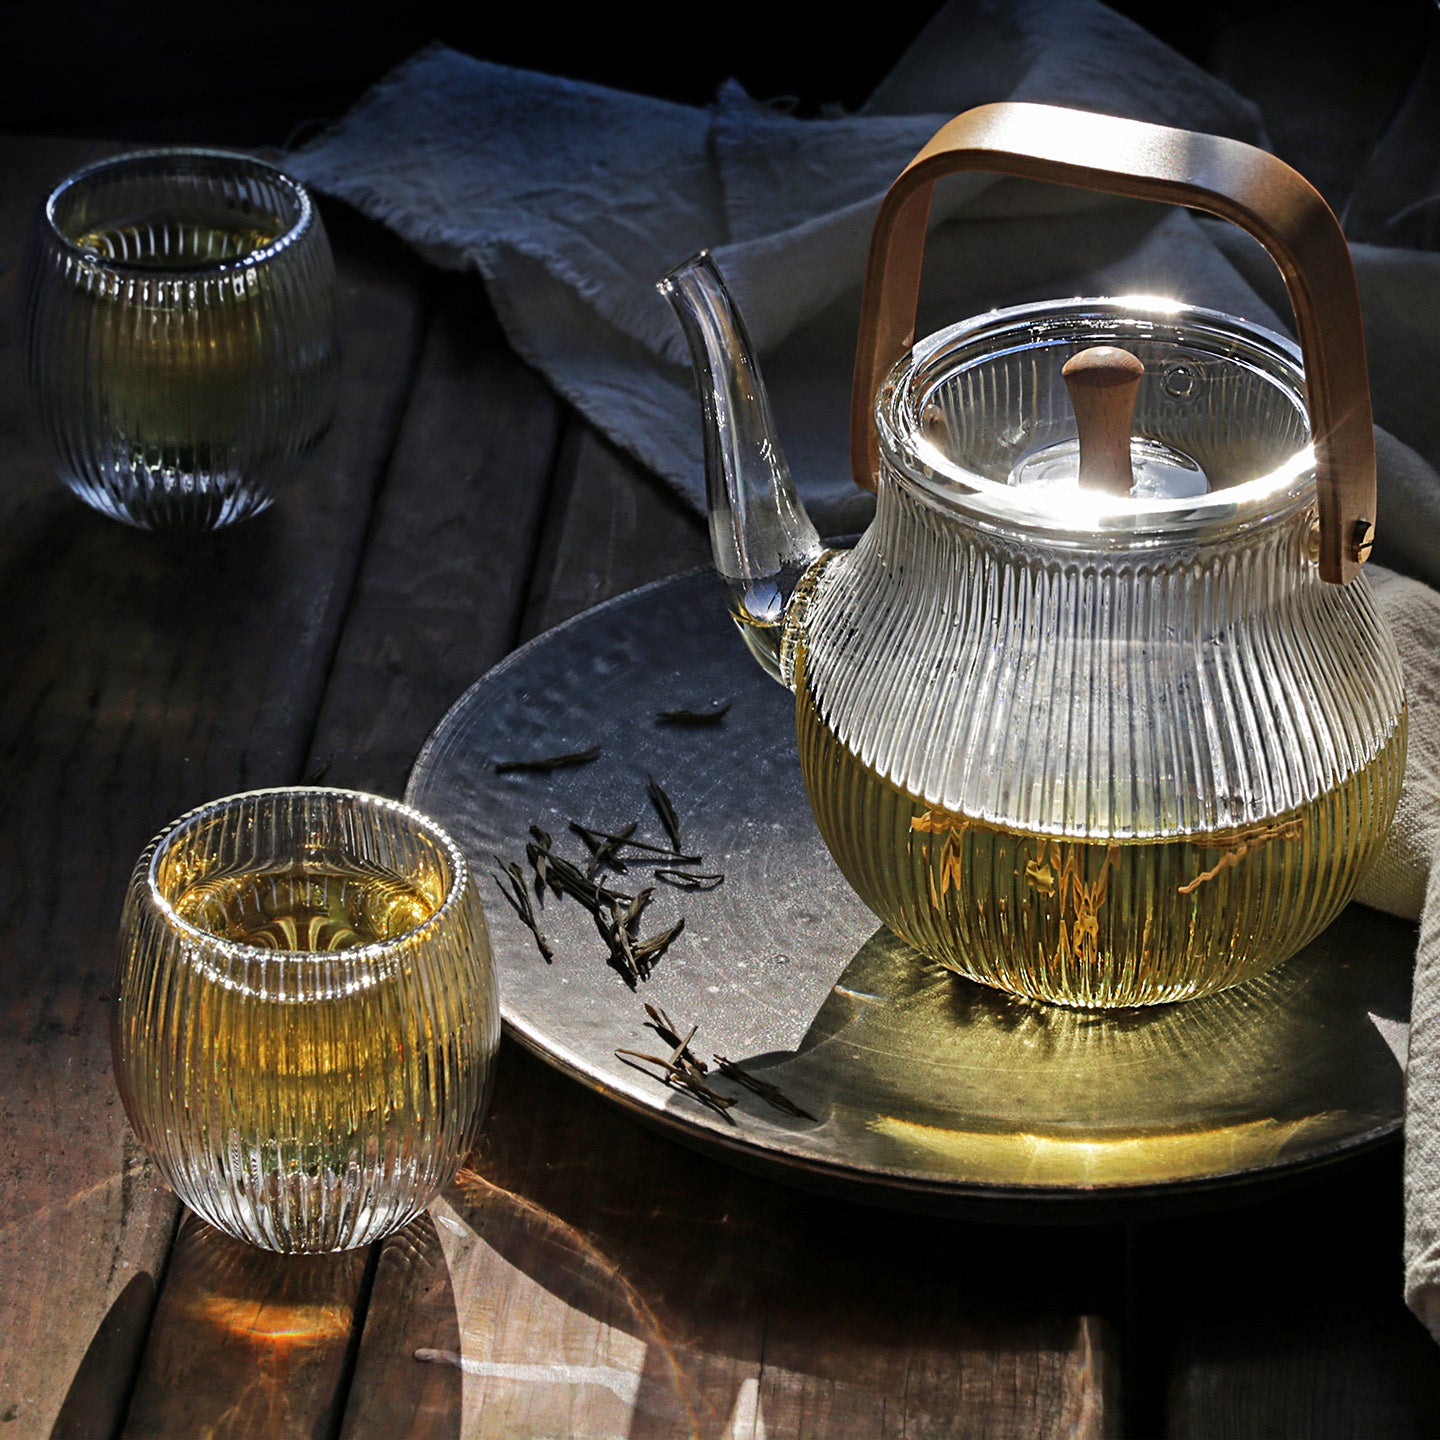 Clear Glass Teapot - Classical 250ml – EILONG®